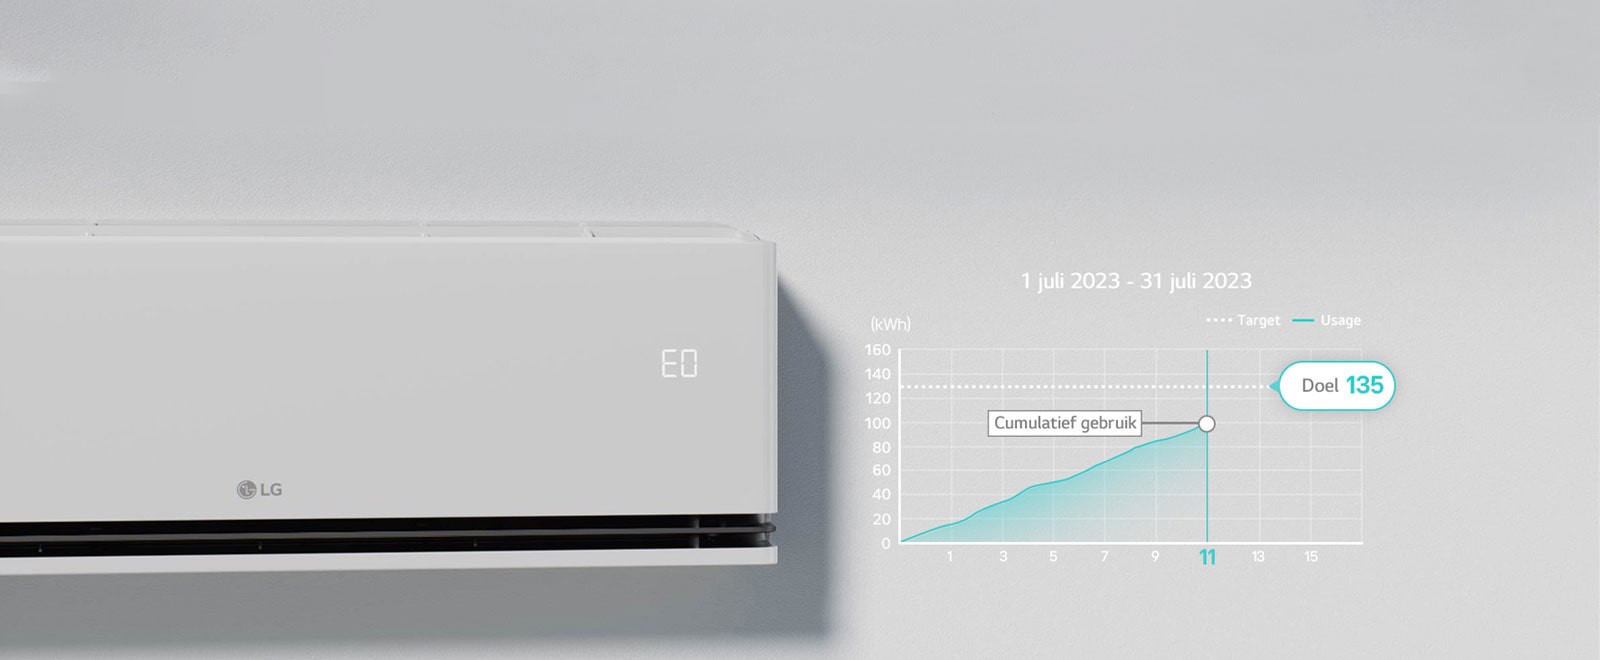 Het "EO"-teken is gecontroleerd op het airconditioningpaneel waarop de kW Manager-functie actief is.